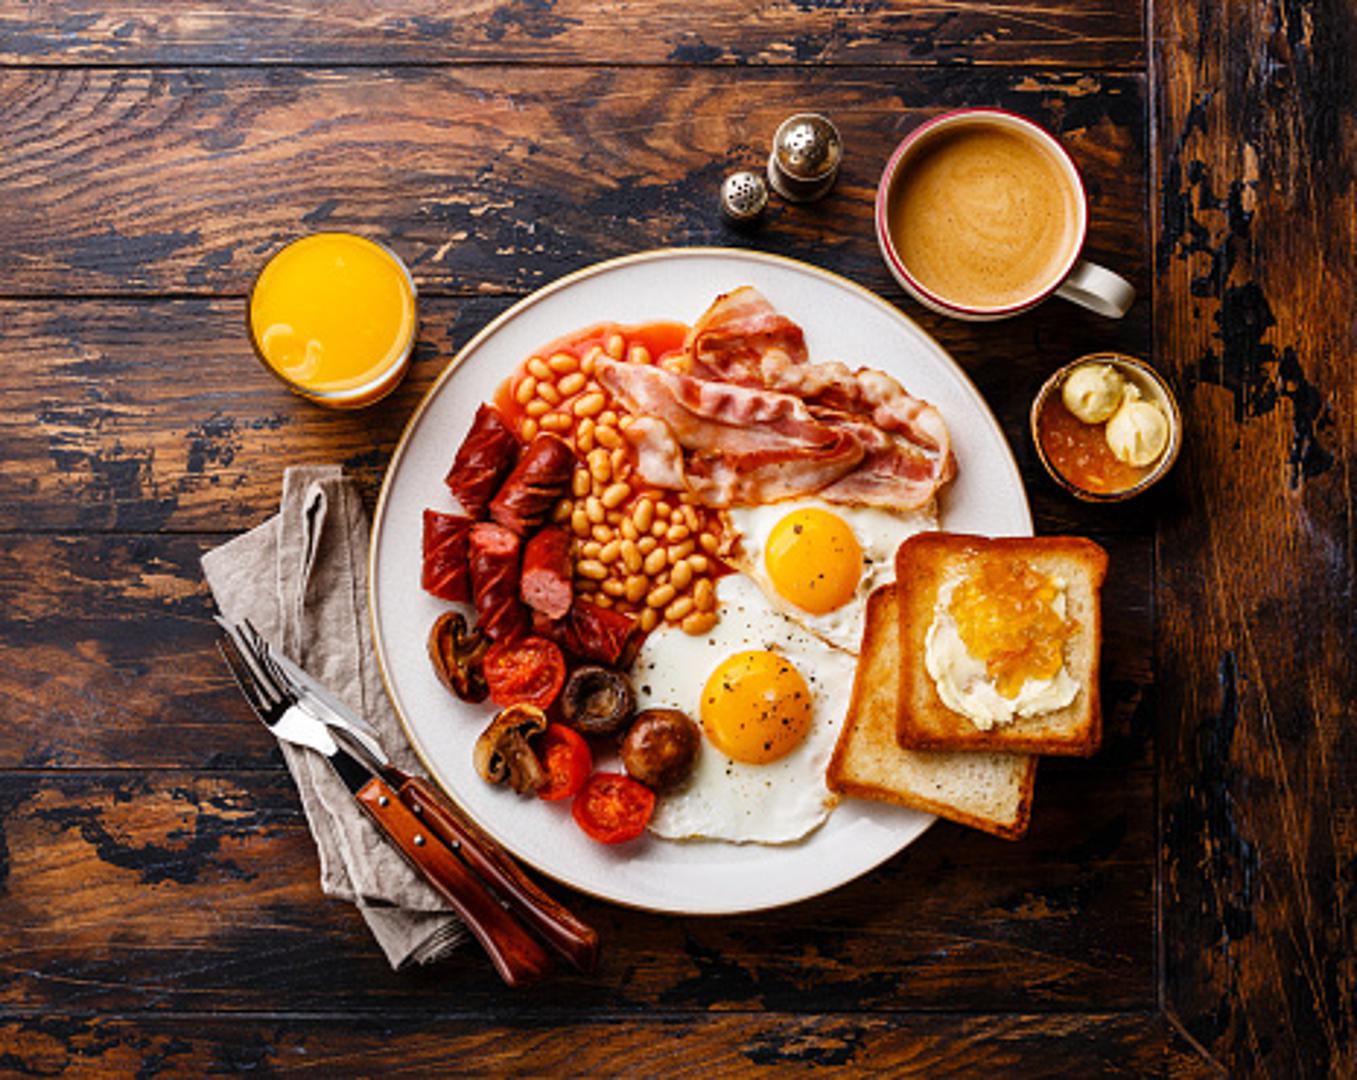 Engleska - Poznati engleski doručak najčešće sadrži sadrži jaja (220 kcal), kruh (100 kcal), pečenu slaninu (350 kcal) i grah (160 kcal). U prosjeku oko 830 kalorija. 